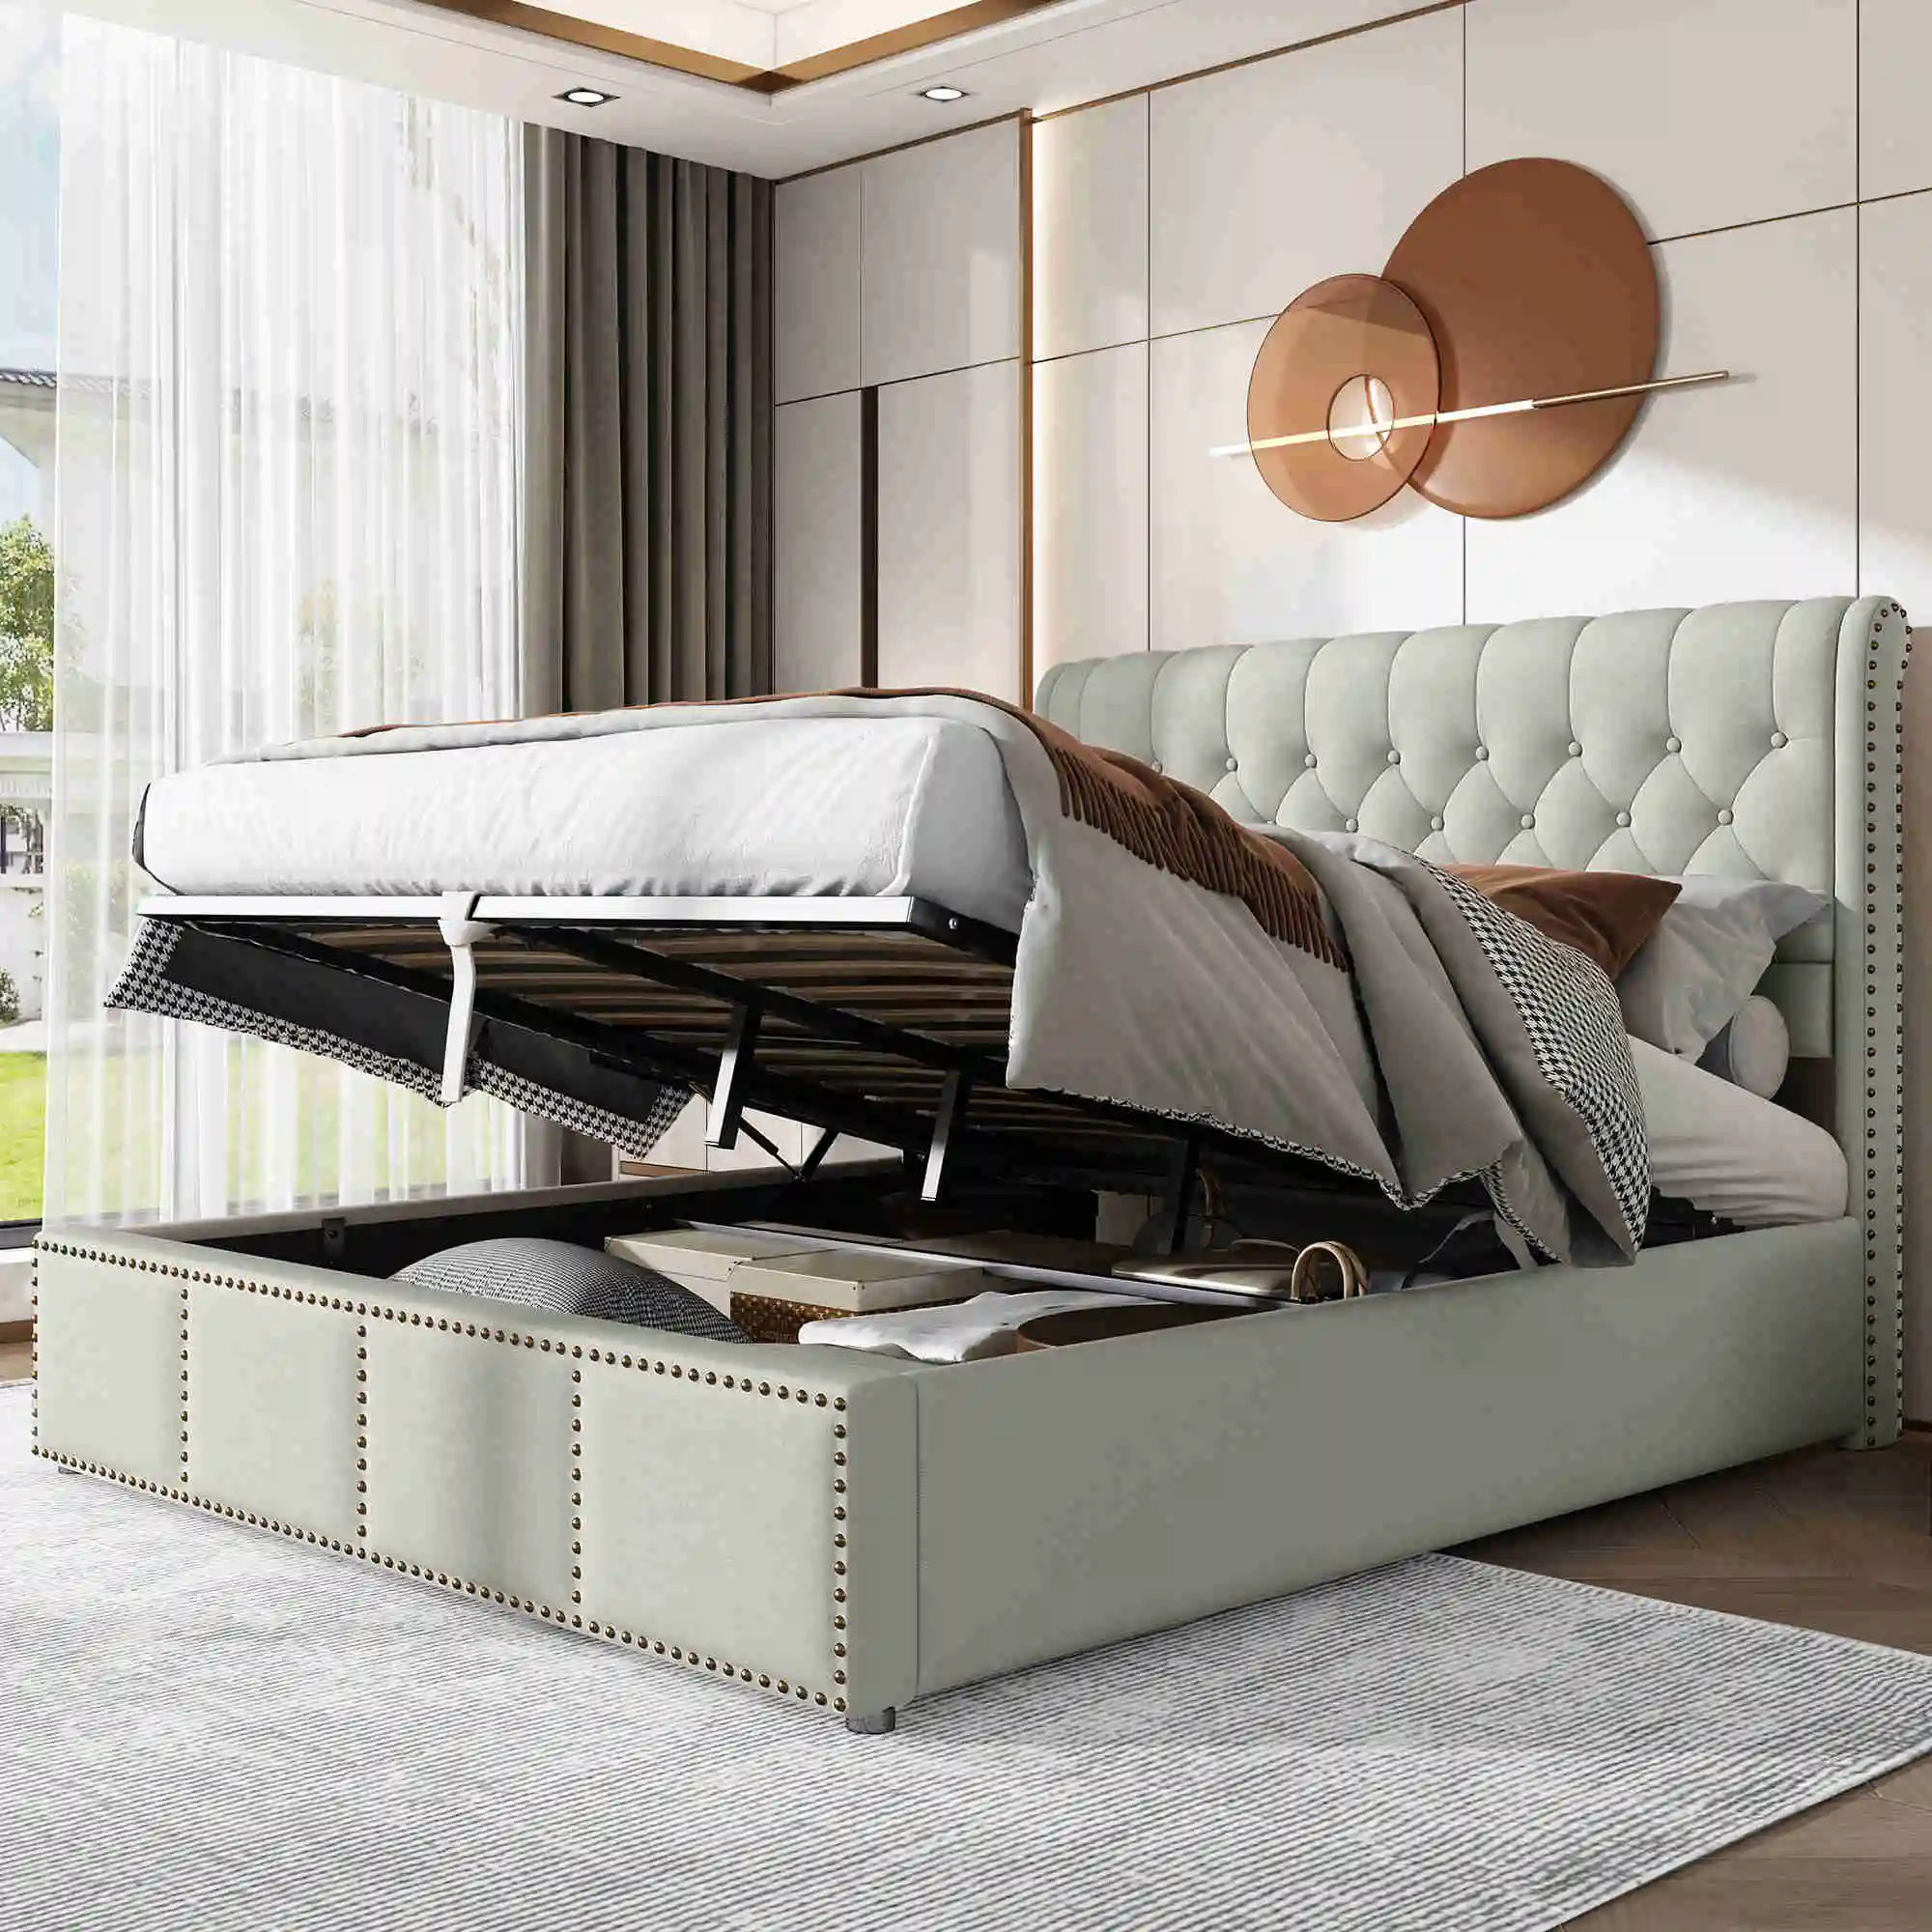 Кровать с обивкой из хлопчатобумажного полотна, с гидравлическим рычагом, ящиками для хранения постельного белья, декорированная заклепками, 140 x 200 см, без матраса